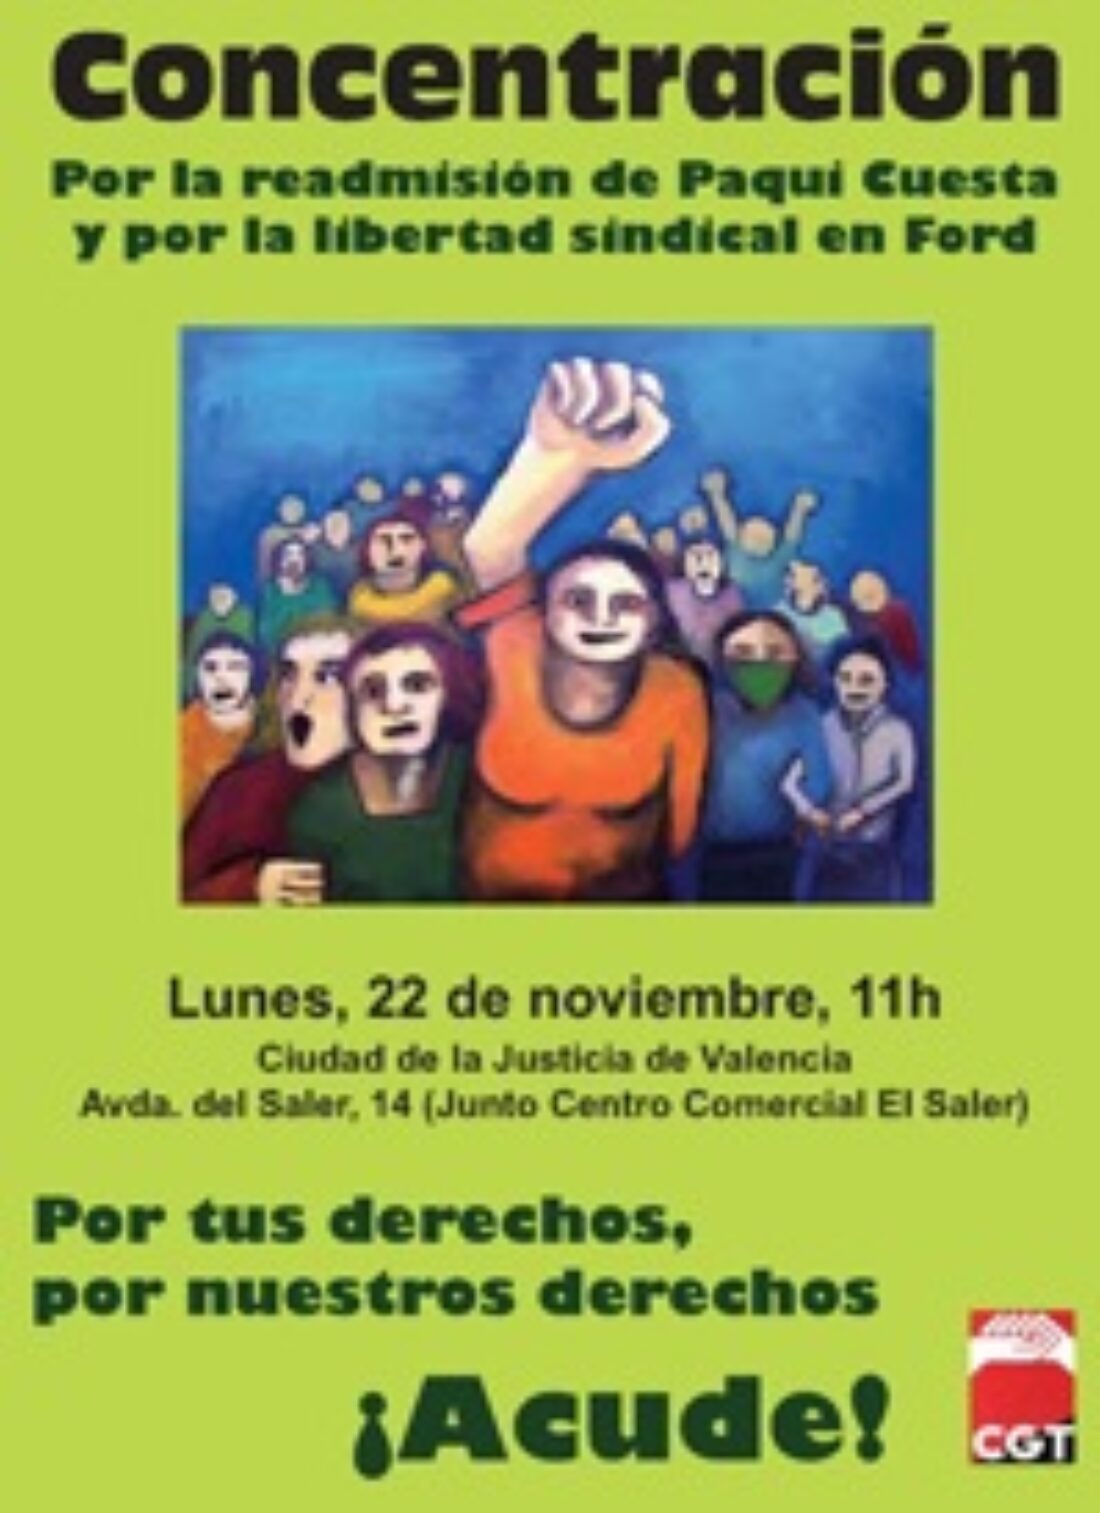 22-nov, Valencia : Concentración por la readmisión de Paqui Cuesta y por la libertad sindical en Ford